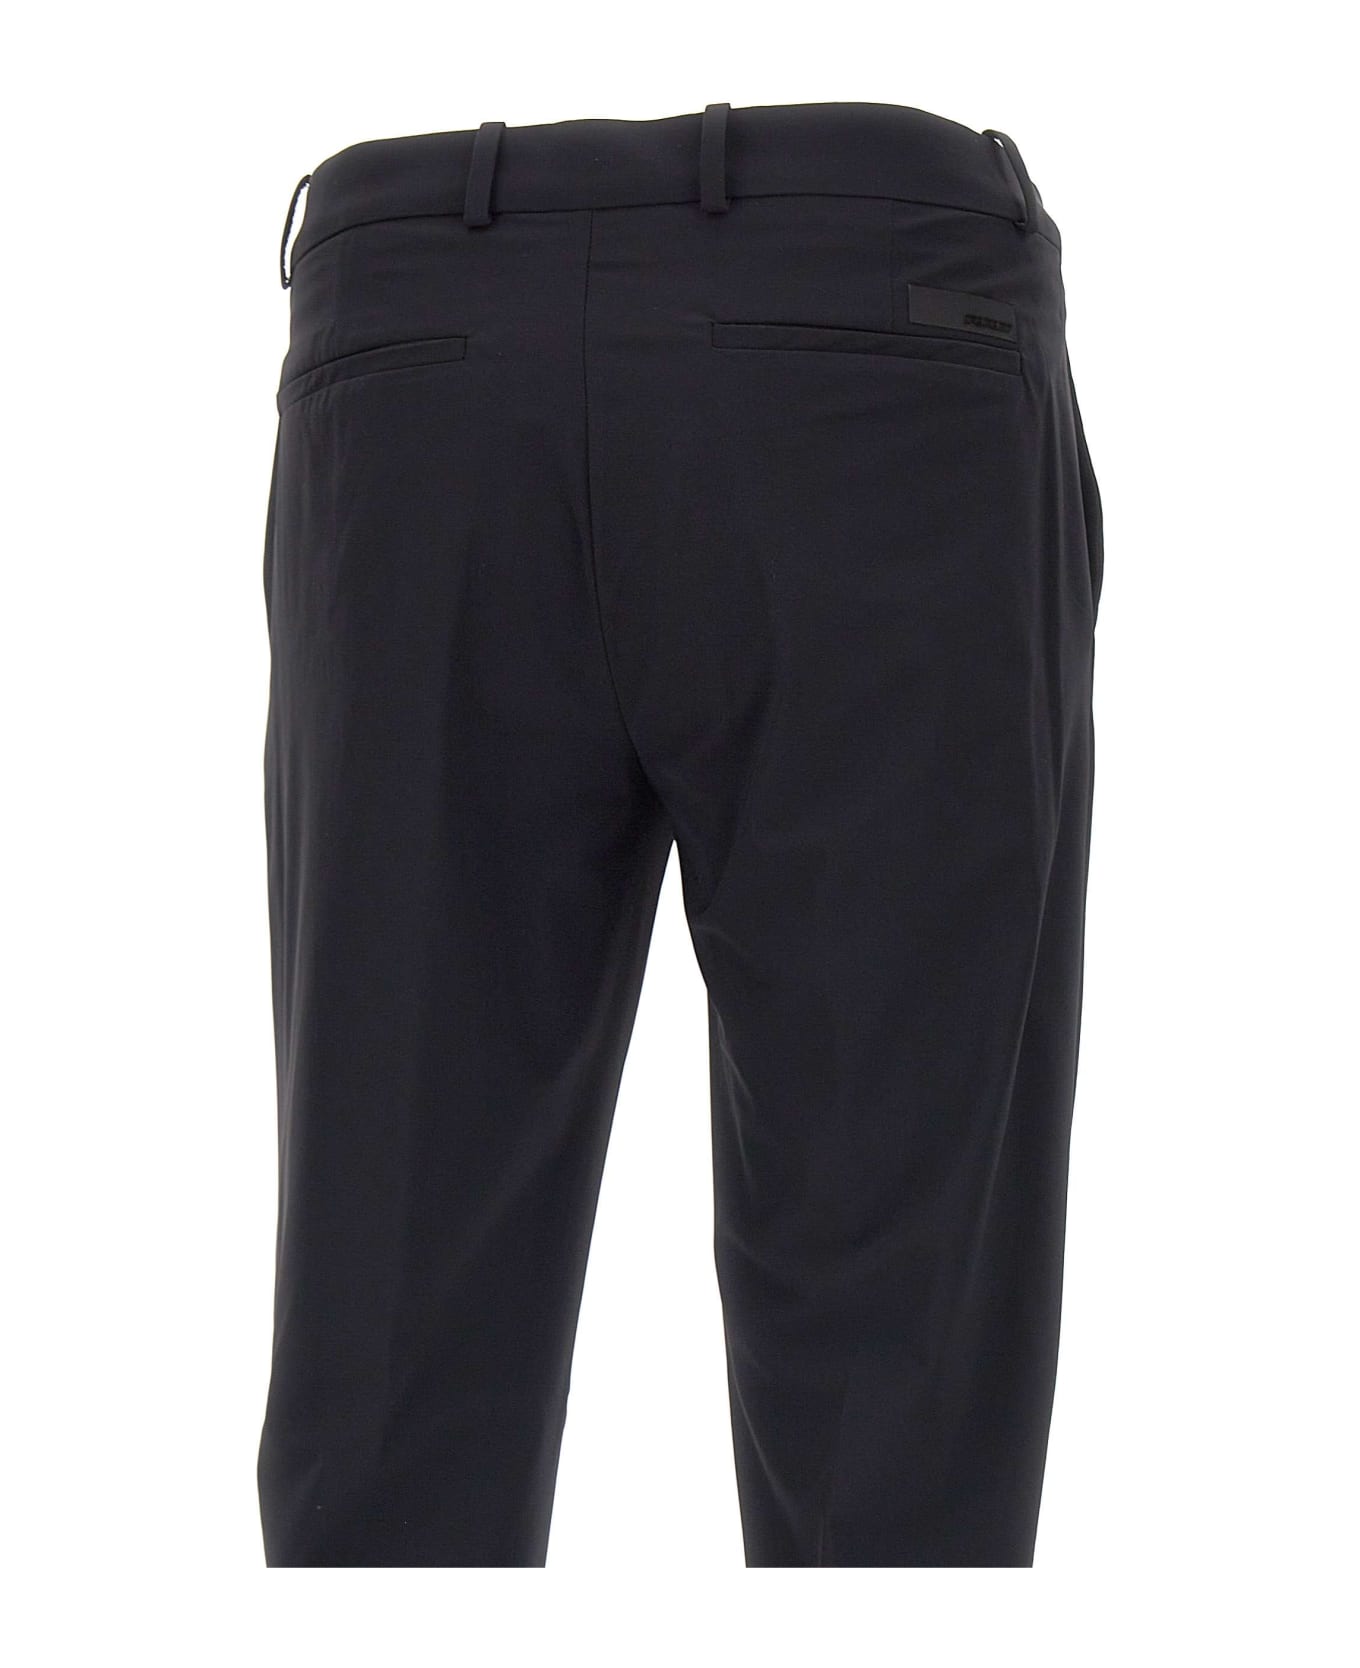 RRD - Roberto Ricci Design 'revo Chino' Trousers Pants - NERO